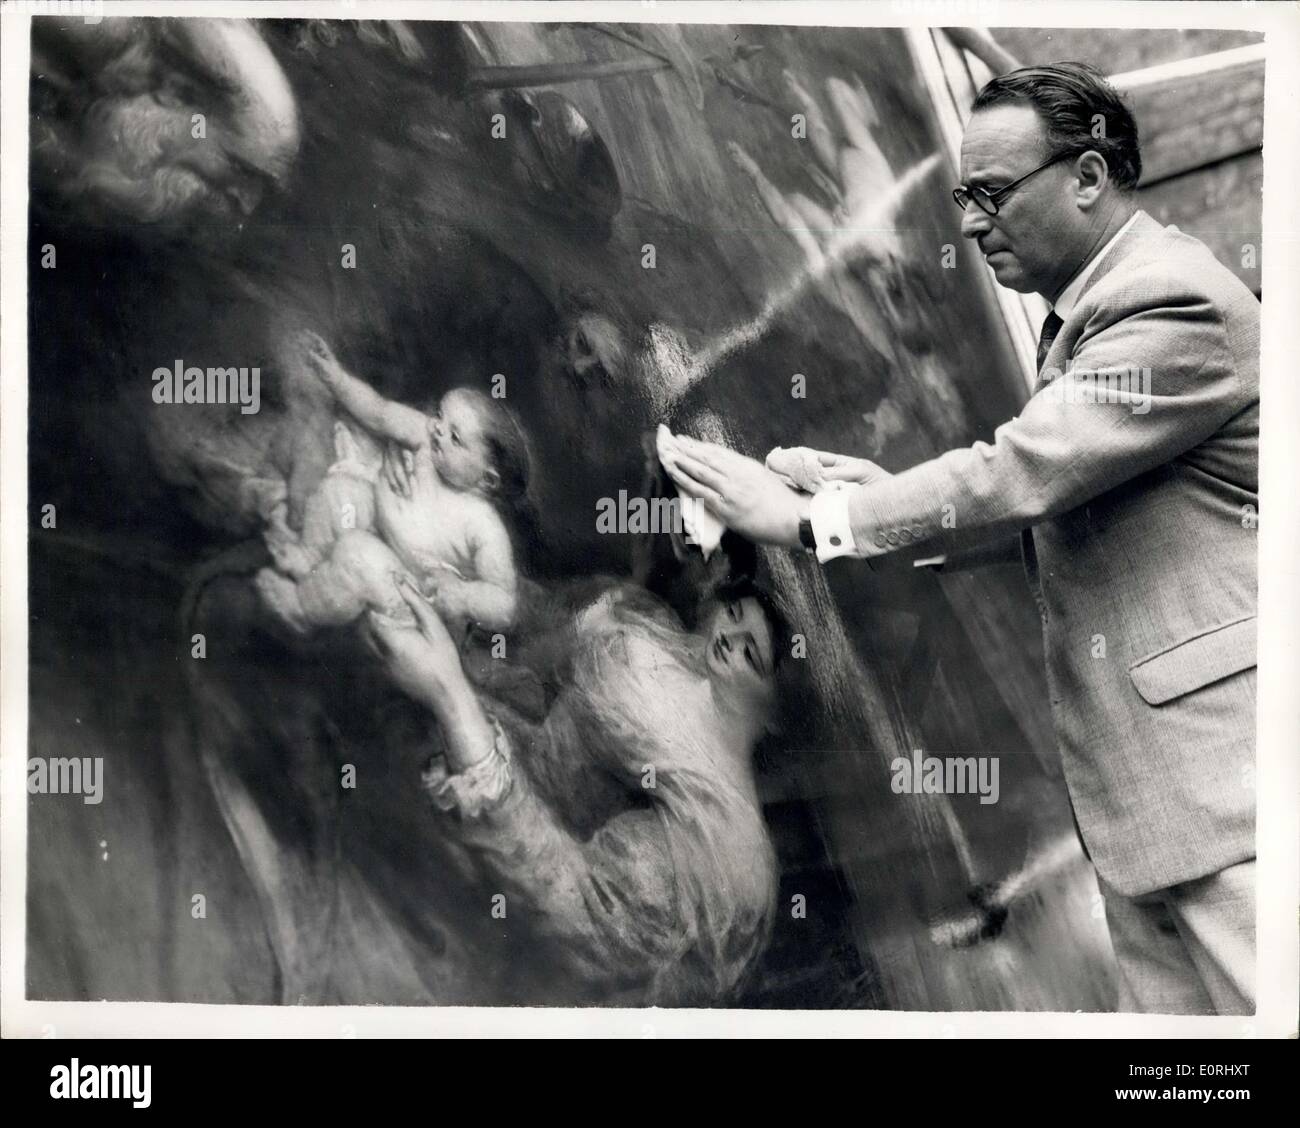 Septembre 21, 1959 - 75 000 chef-d'prend un coup de Ruben's ''Adoration des Mages'' : M. Leonard Koetser le Mayfair un marchand d'art qui a fait le monde slotter soumission de 75 000 $ pour Ruben ''Adoration des Mages'' chez Sotheby's, en juillet dernier - a commencé à travailler sur le nettoyage de la peinture. Le travail est réalisé dans l'entrée d'une ruelle de dépôt par M. Koetser Felham et son adjoint M. Reeve. Photo montre M. Koetser au travail sur le nettoyage de la grande peinture à Fulham ce matin. Banque D'Images